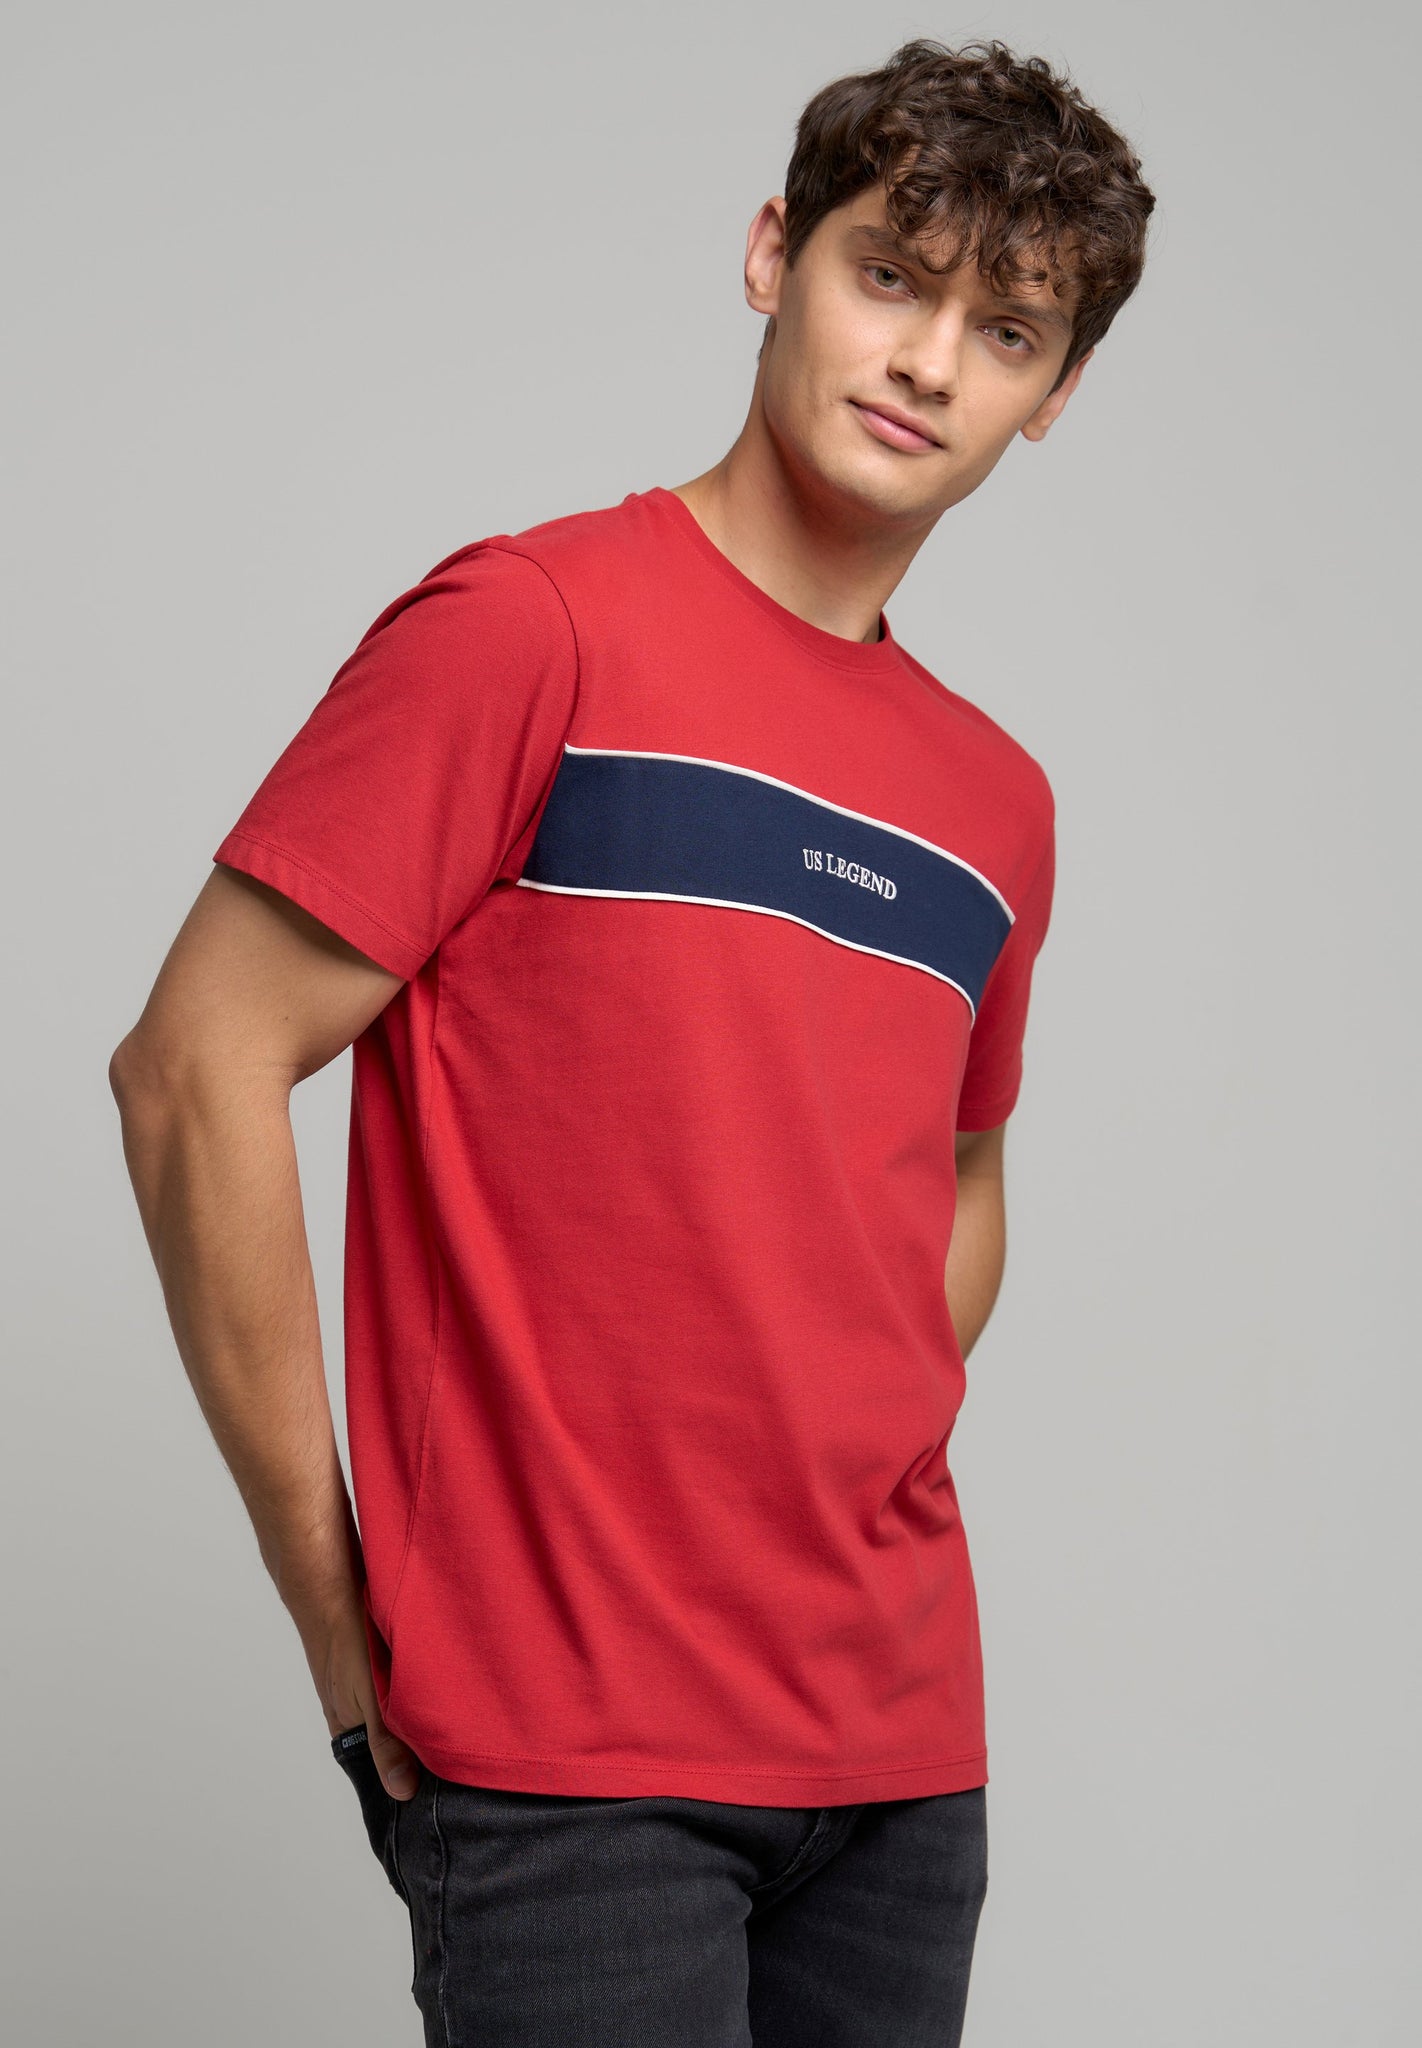 U.S. Legend T.Shirt | Red